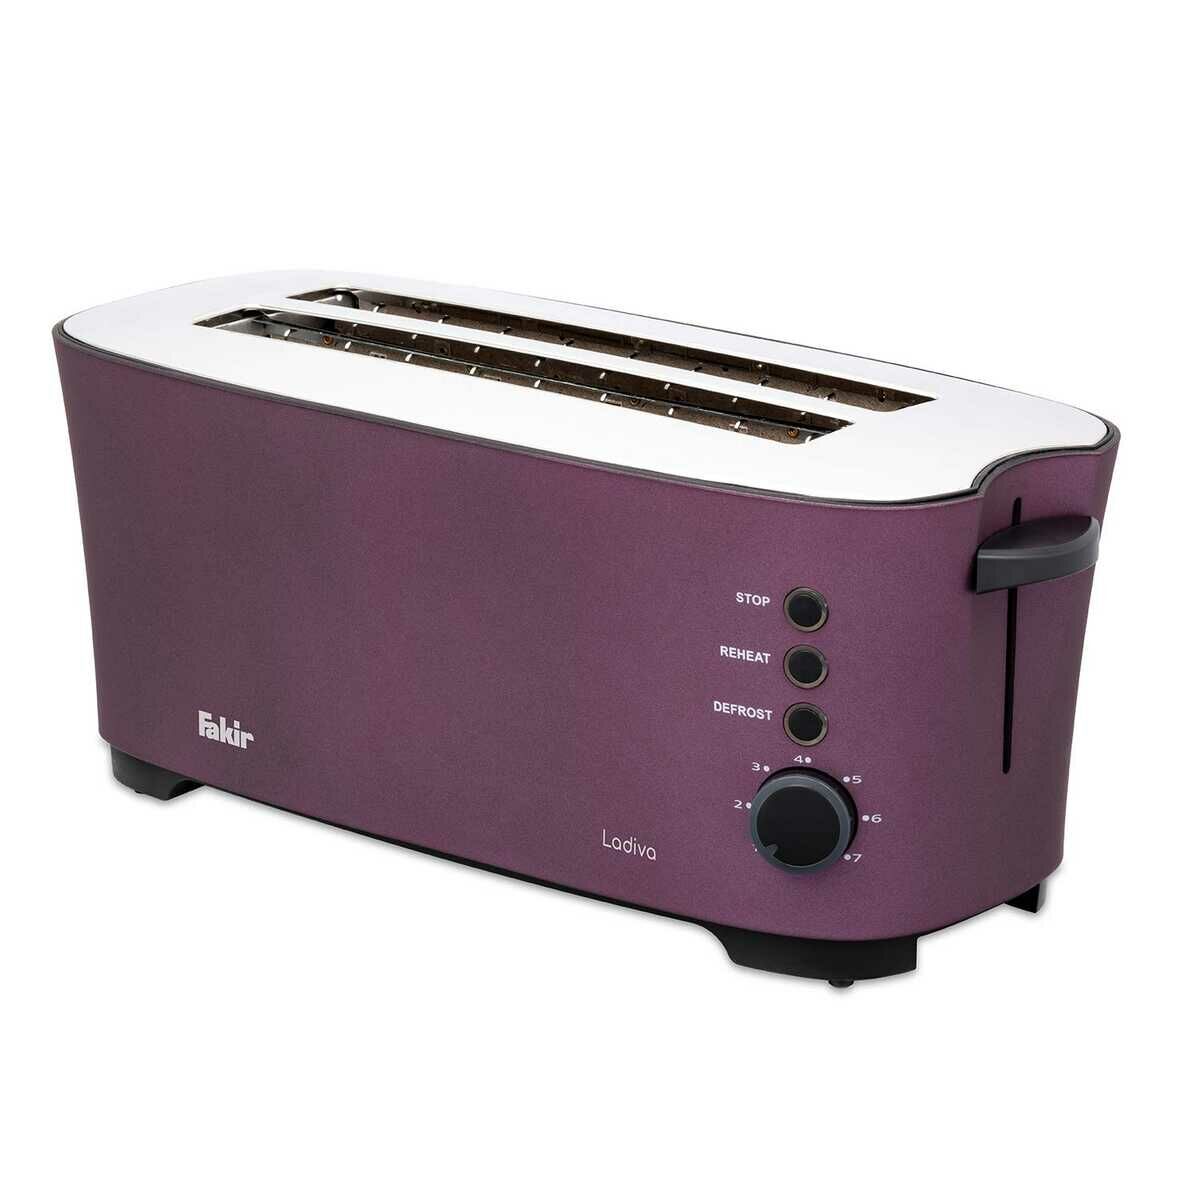 Fakir Ladiva Ekmek Kızartma Makinesi Violet